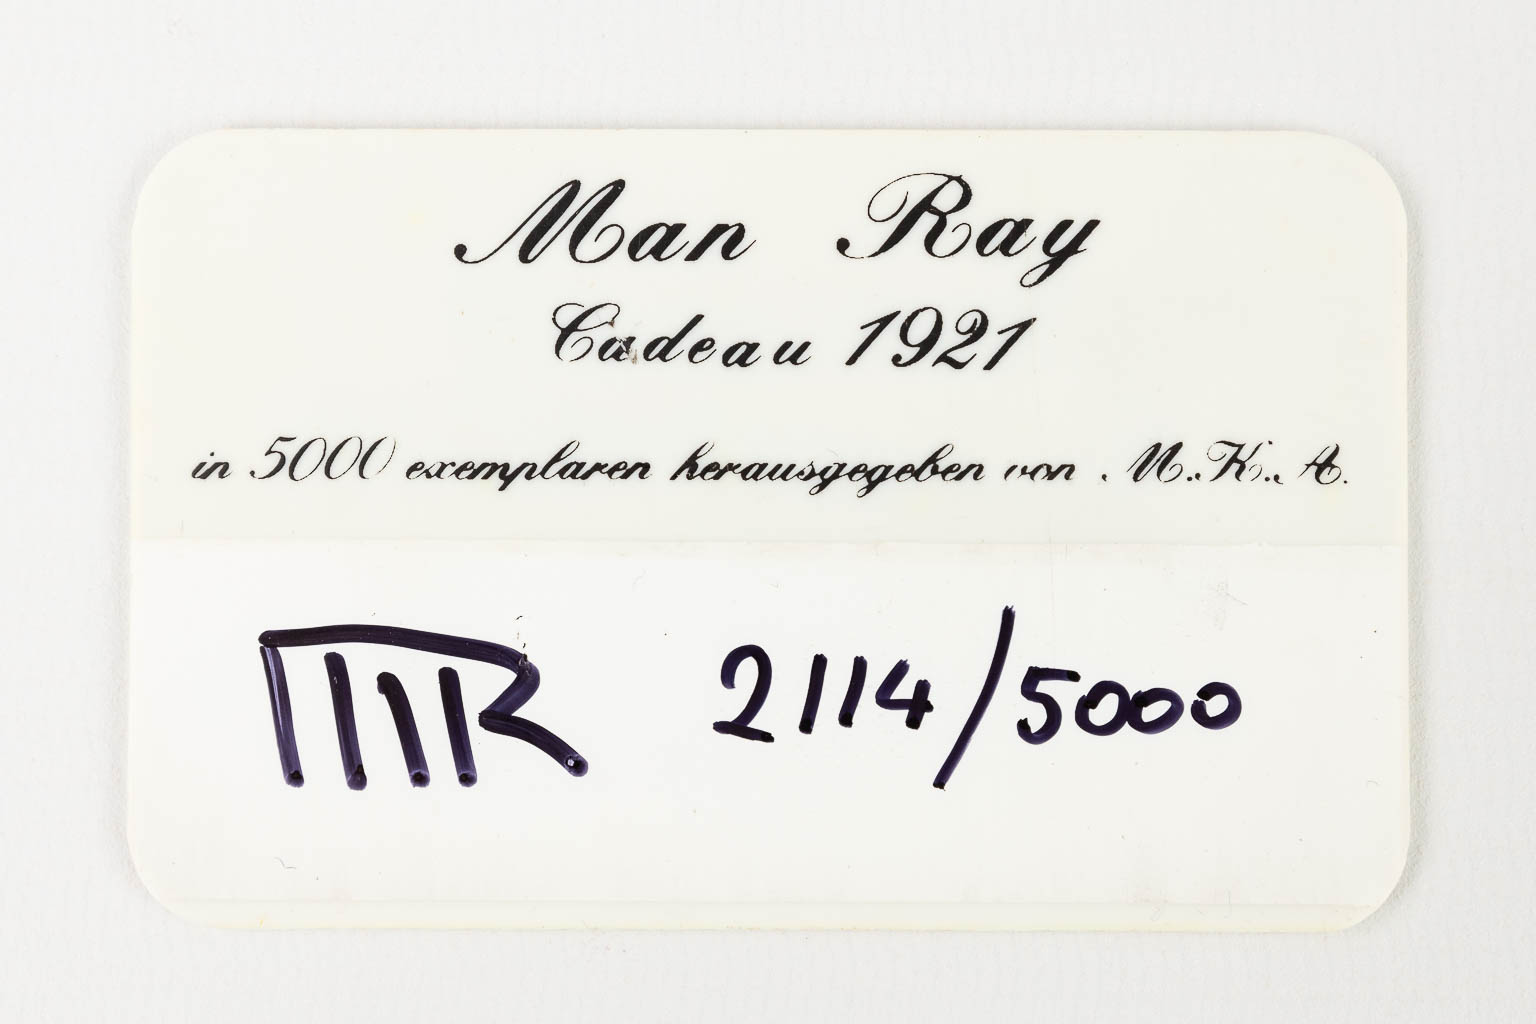 MAN RAY (XX) "Cadeau", 1974, number 2114/5000. (L: 10 x W: 10 x H: 16 cm)